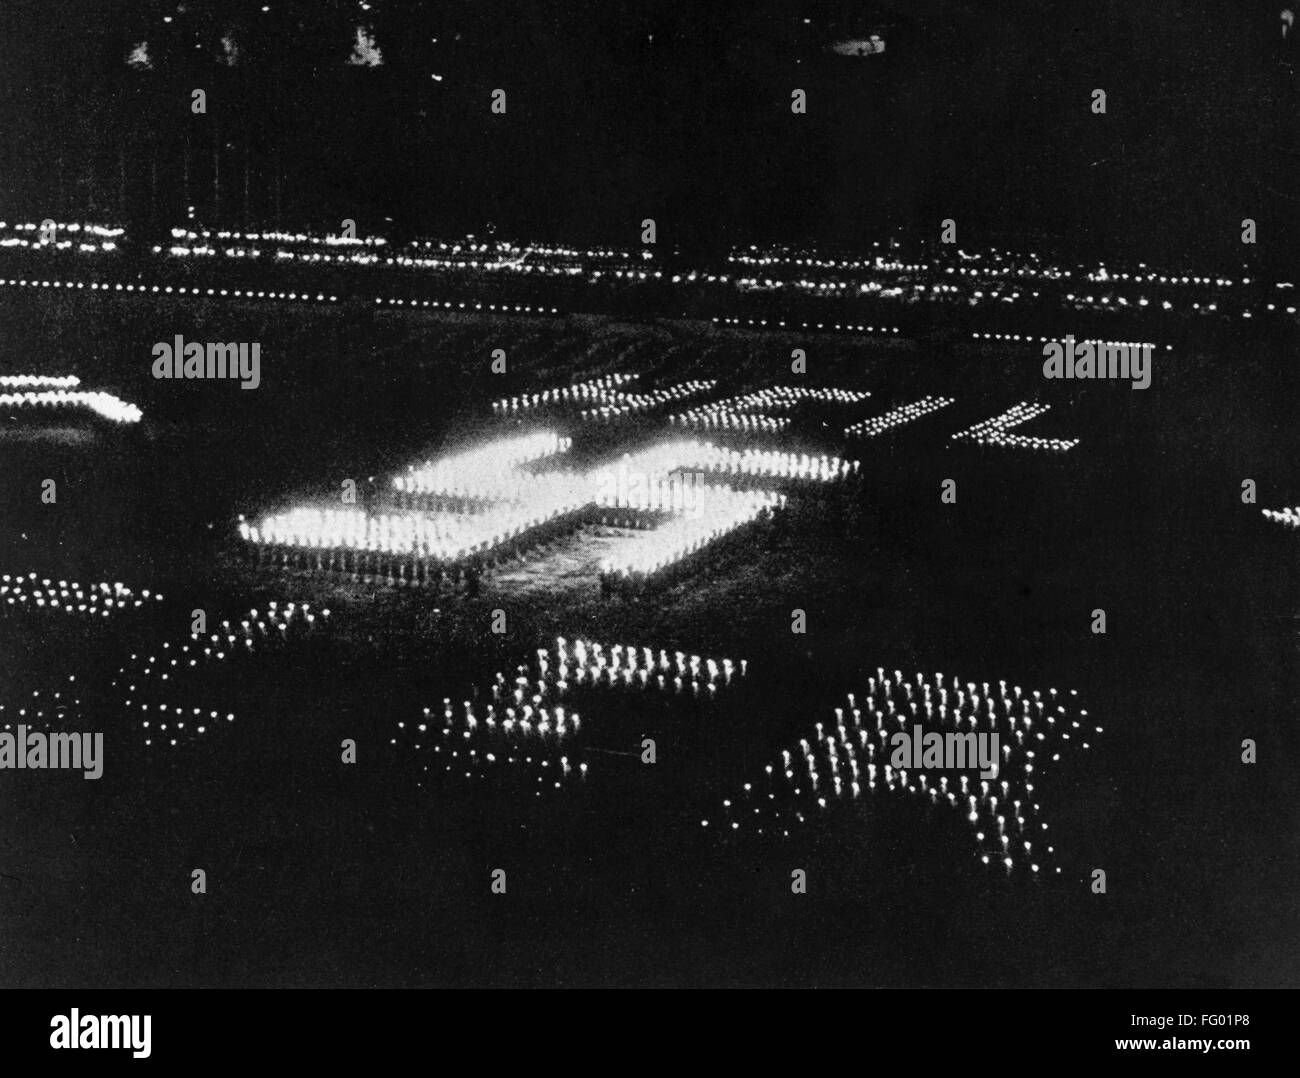 RALLY nazi, c1937. /Nlos miembros del partido Nazi la celebración de antorchas, en la formación permanente de la esvástica. Fotografía, c1937. Foto de stock